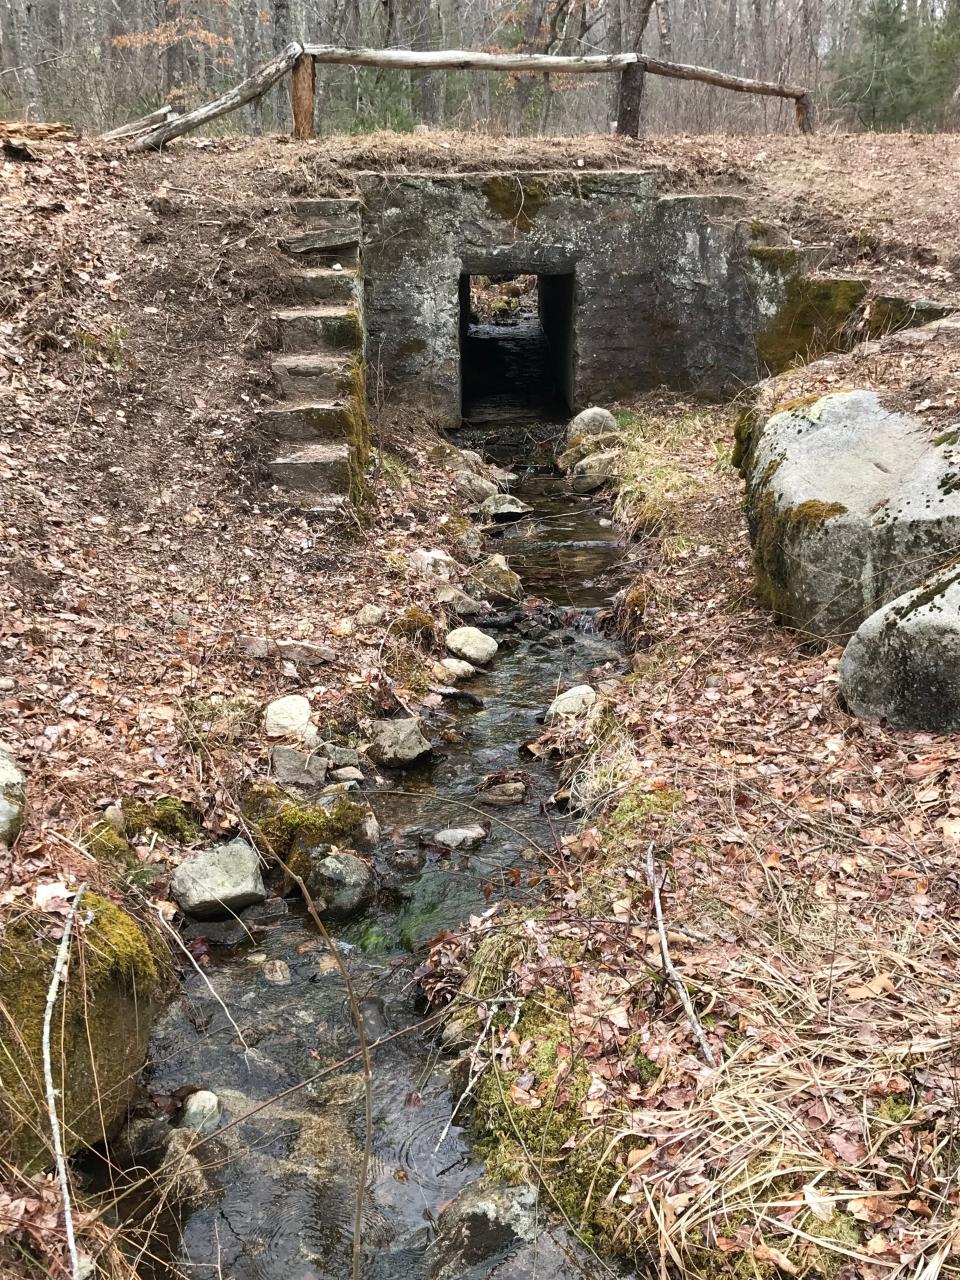 A stream flows through a culvert and under a stone bridge on Plain Road.